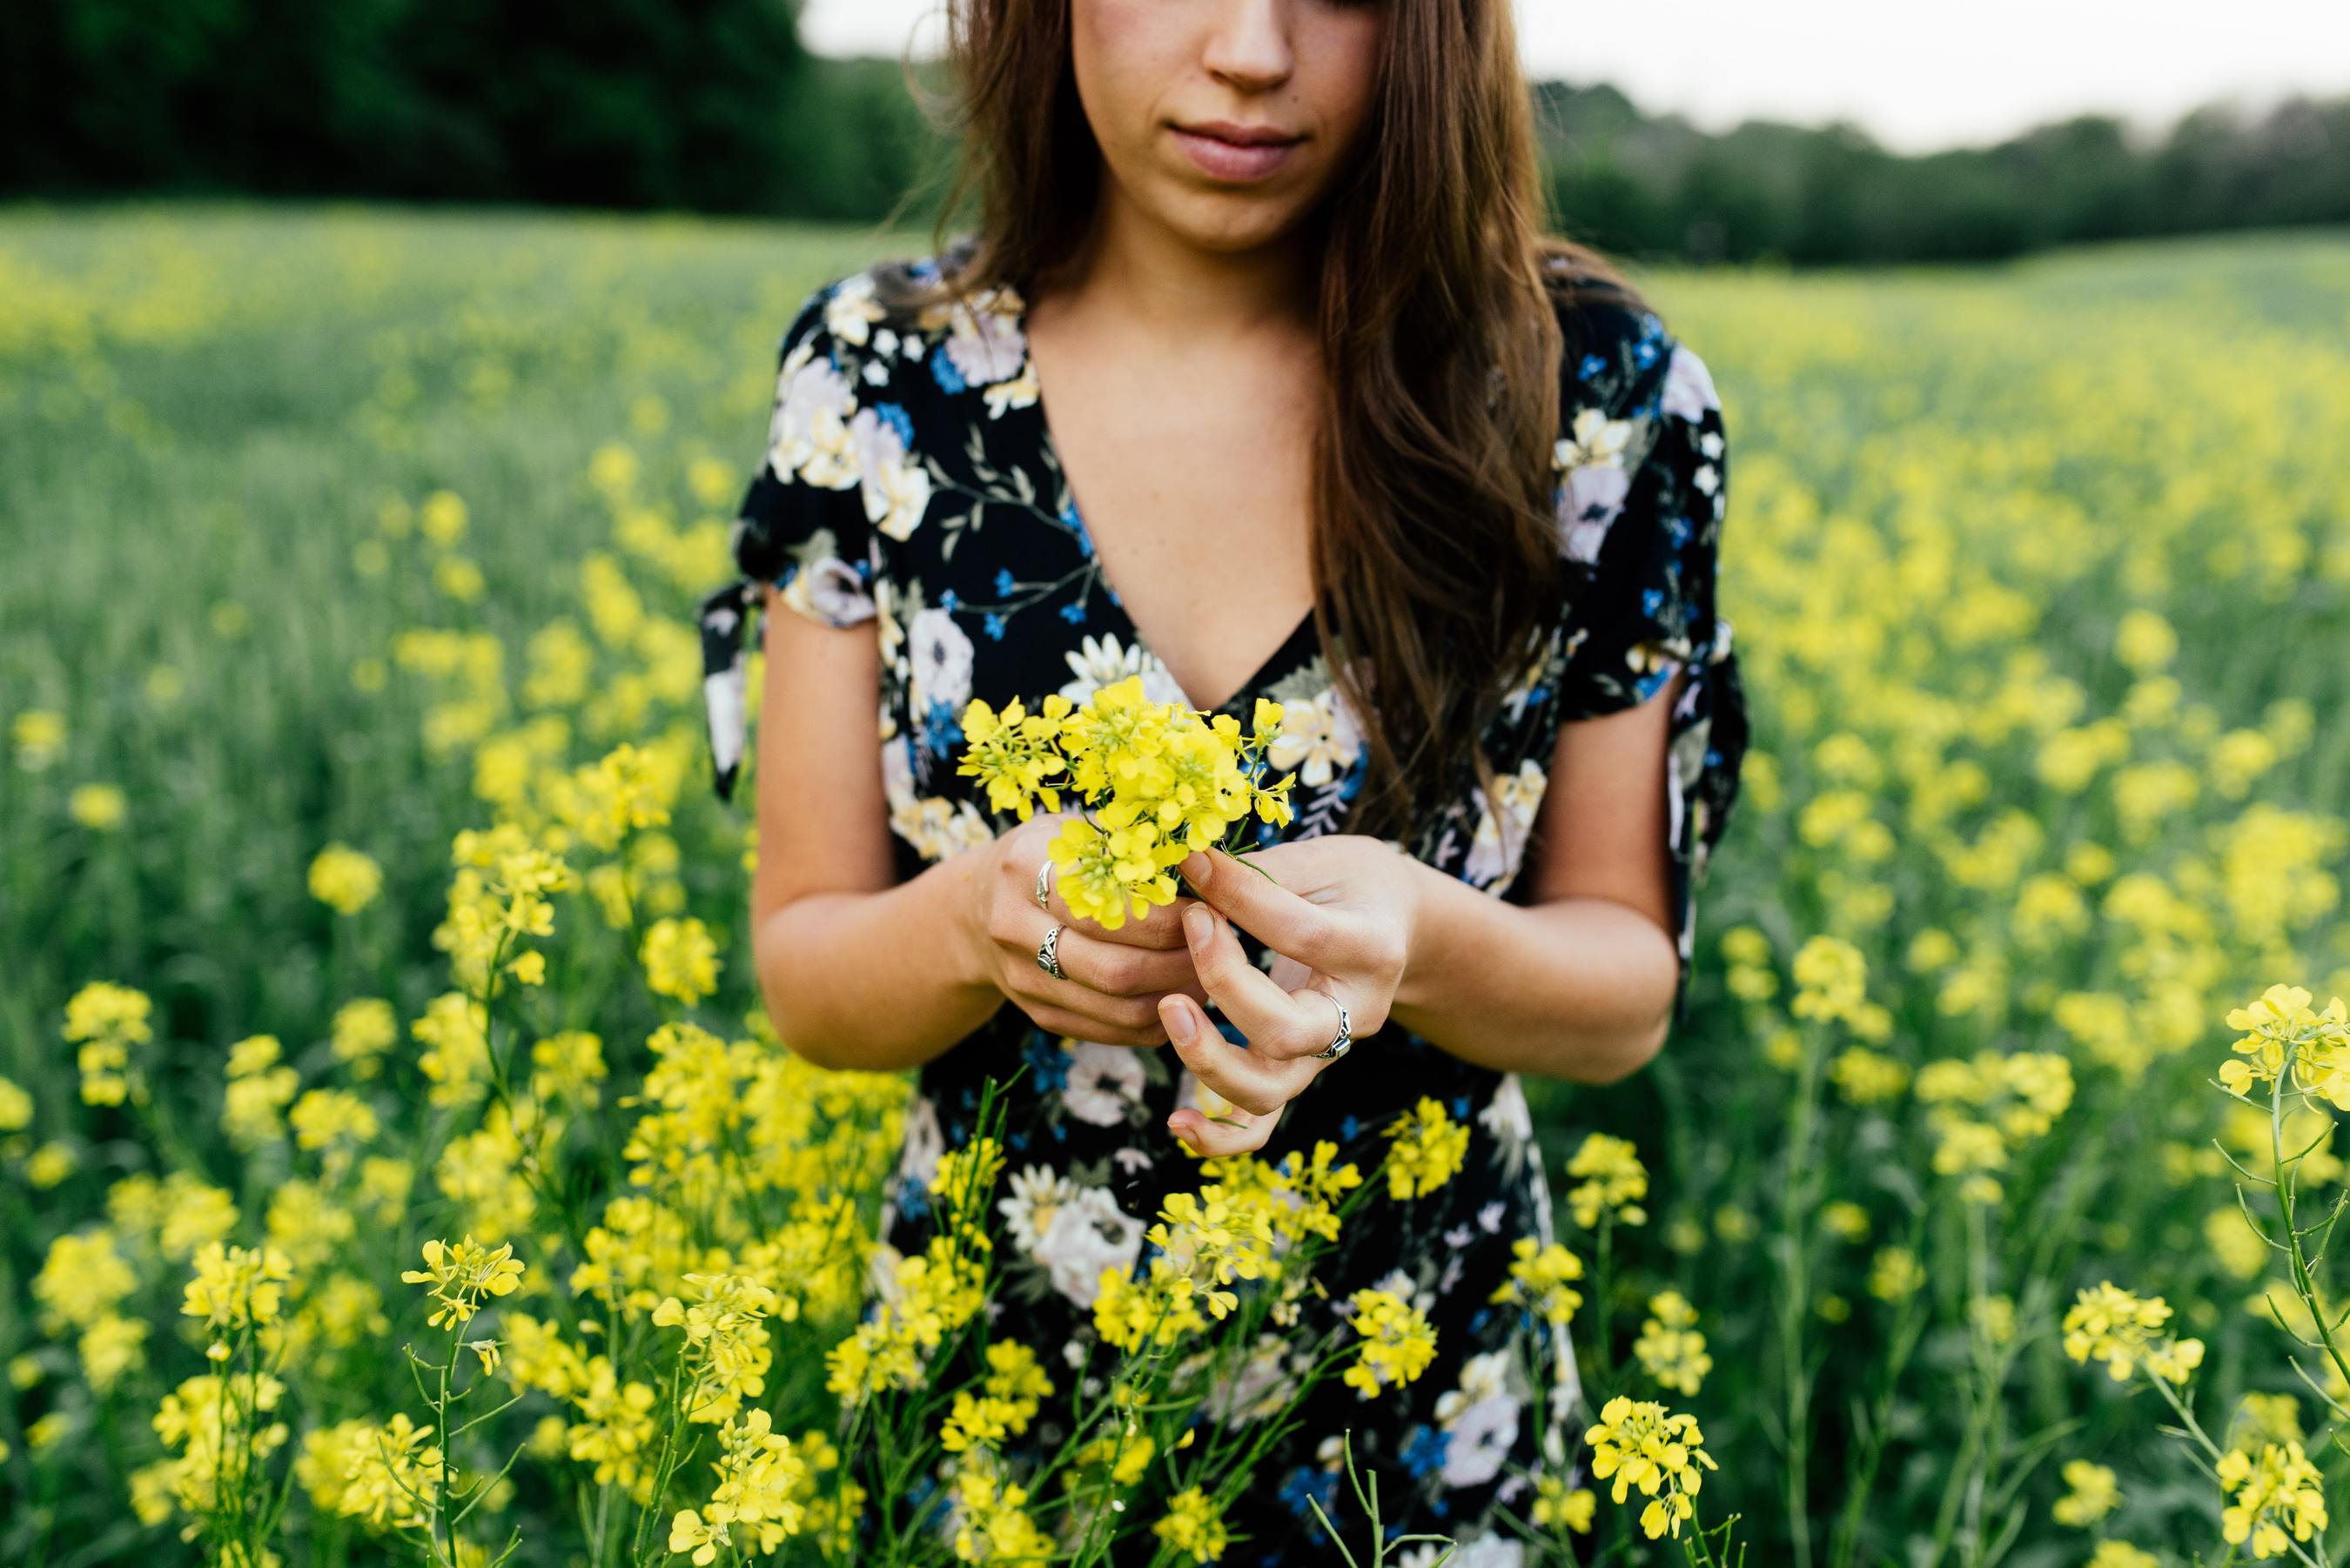 Woman in field holding flowers